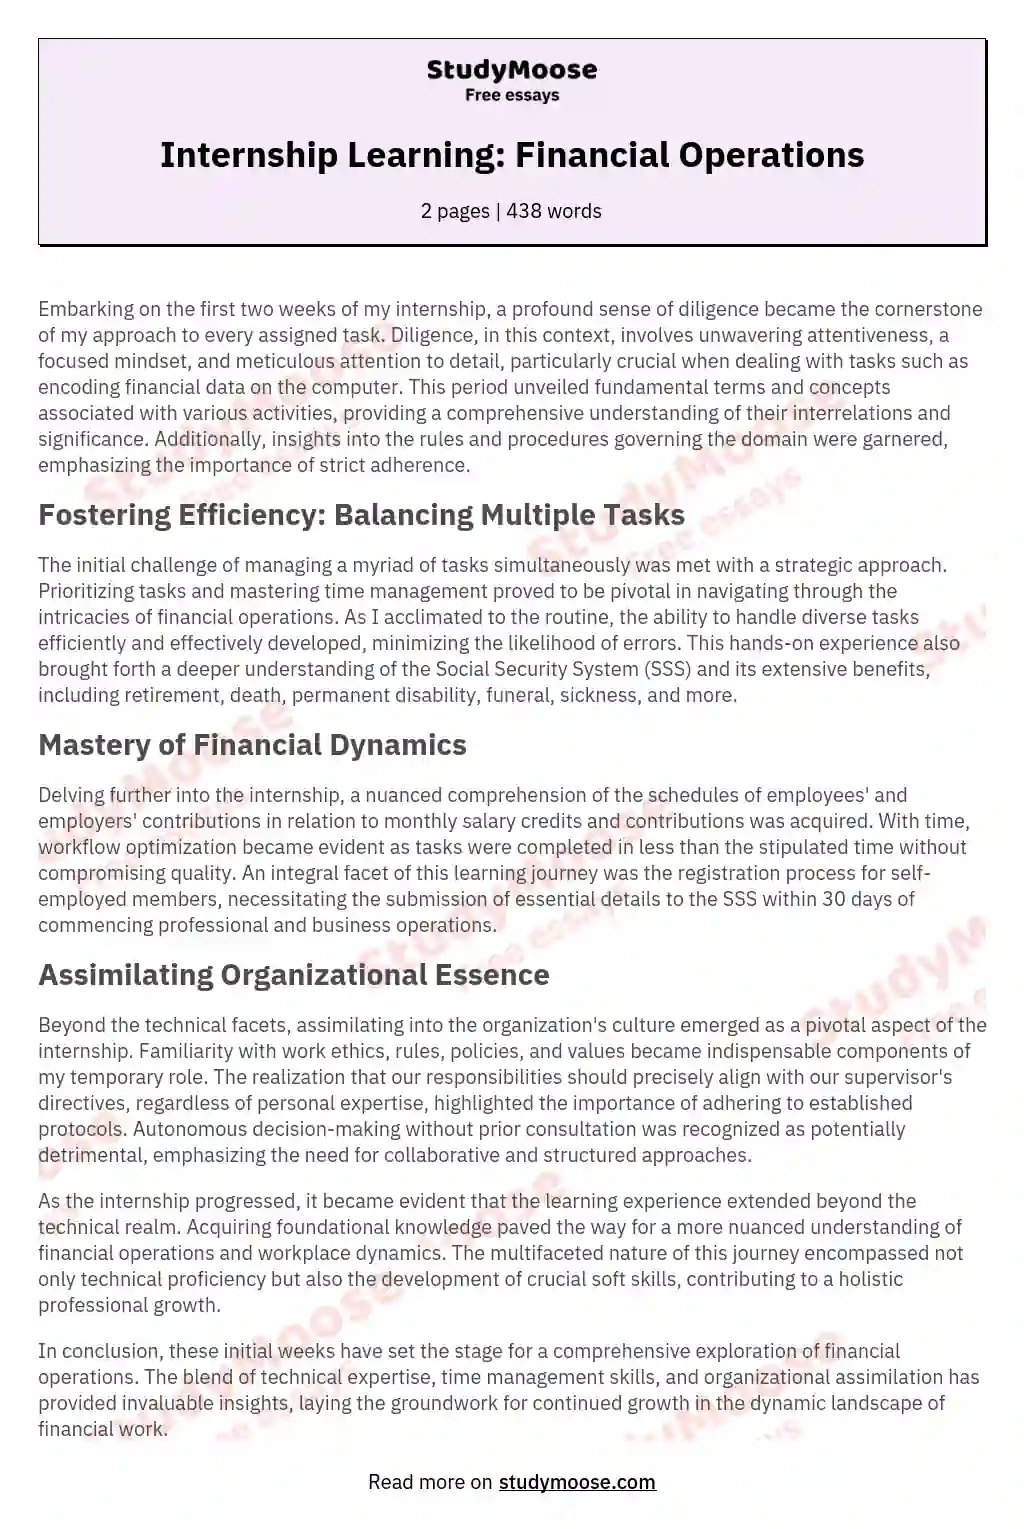 Internship Learning: Financial Operations essay